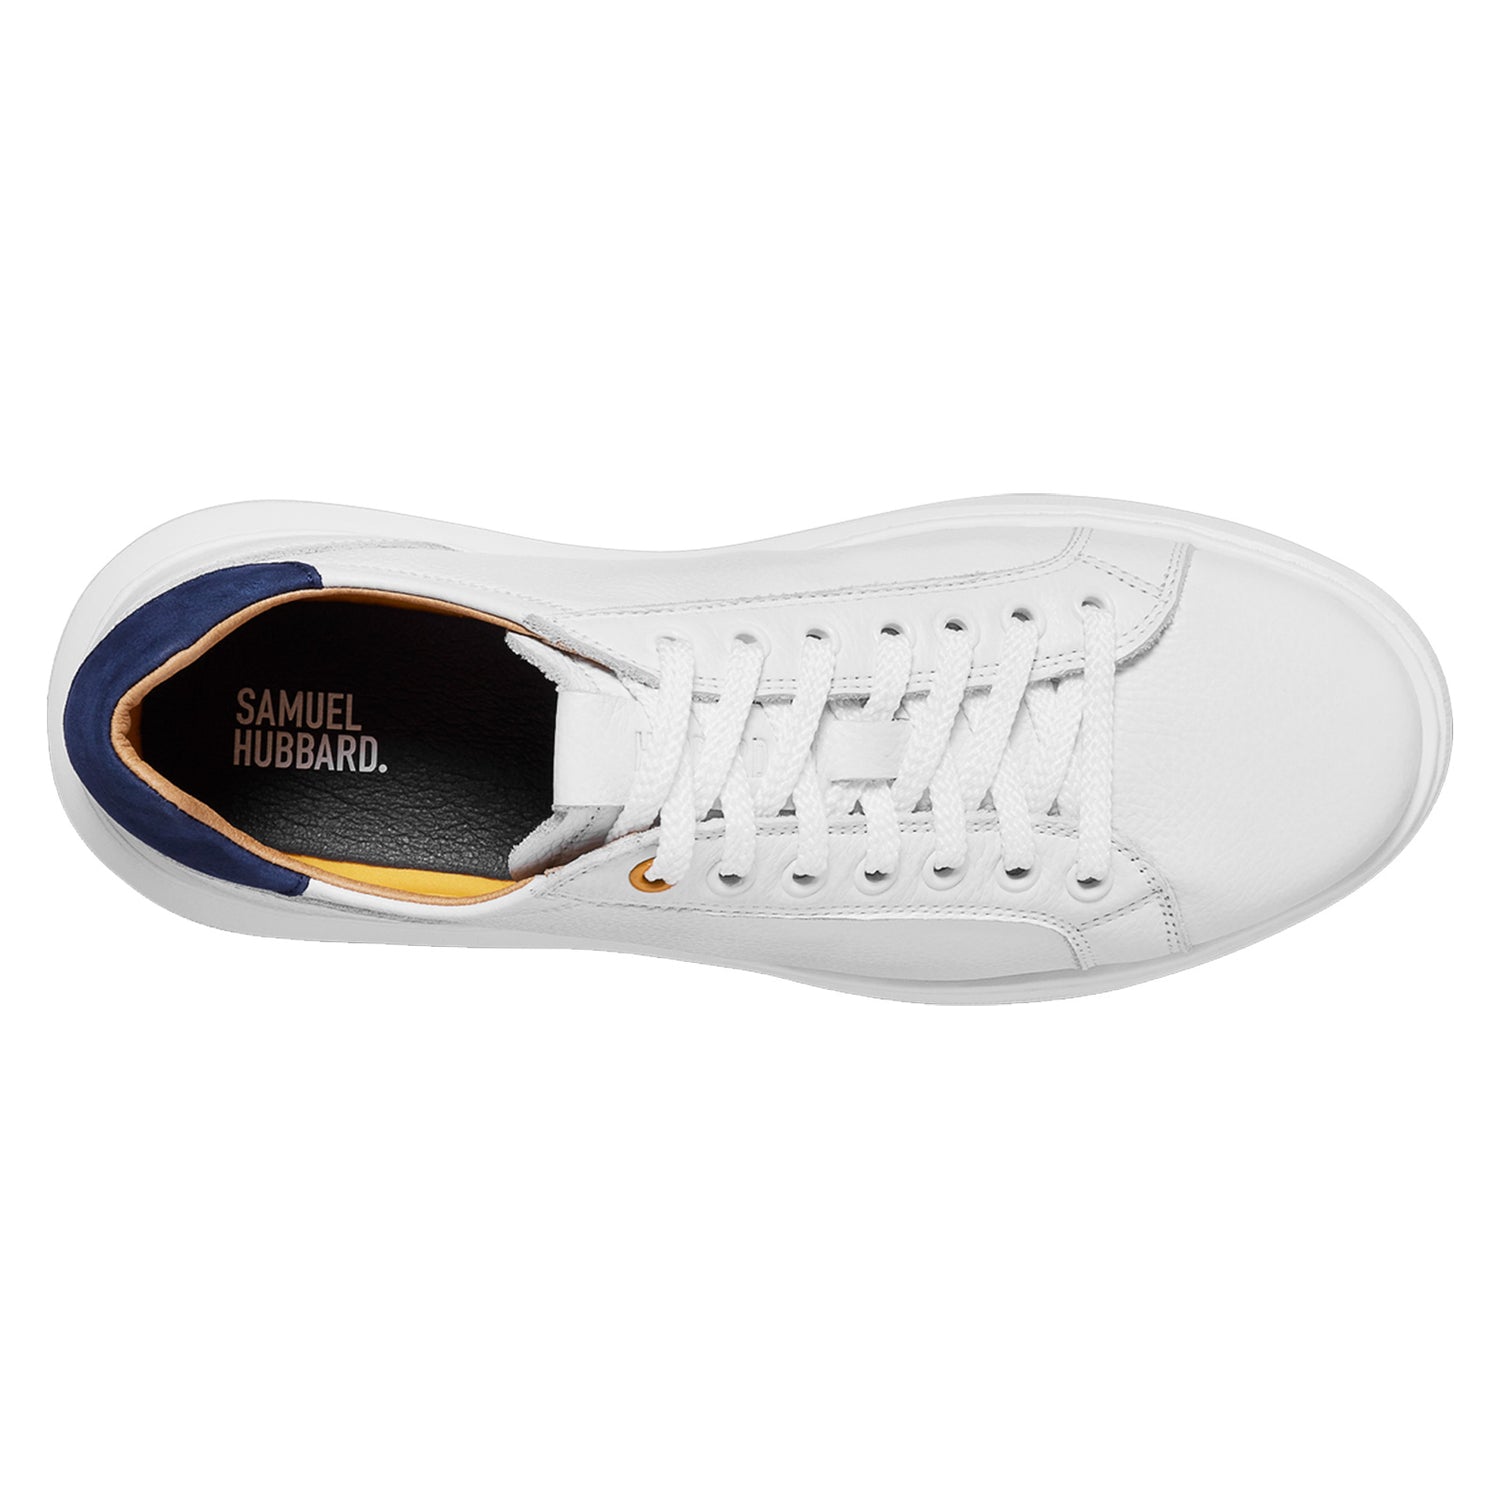 Peltz Shoes  Women's Samuel Hubbard Sunset Sneaker White Leather W1650-110